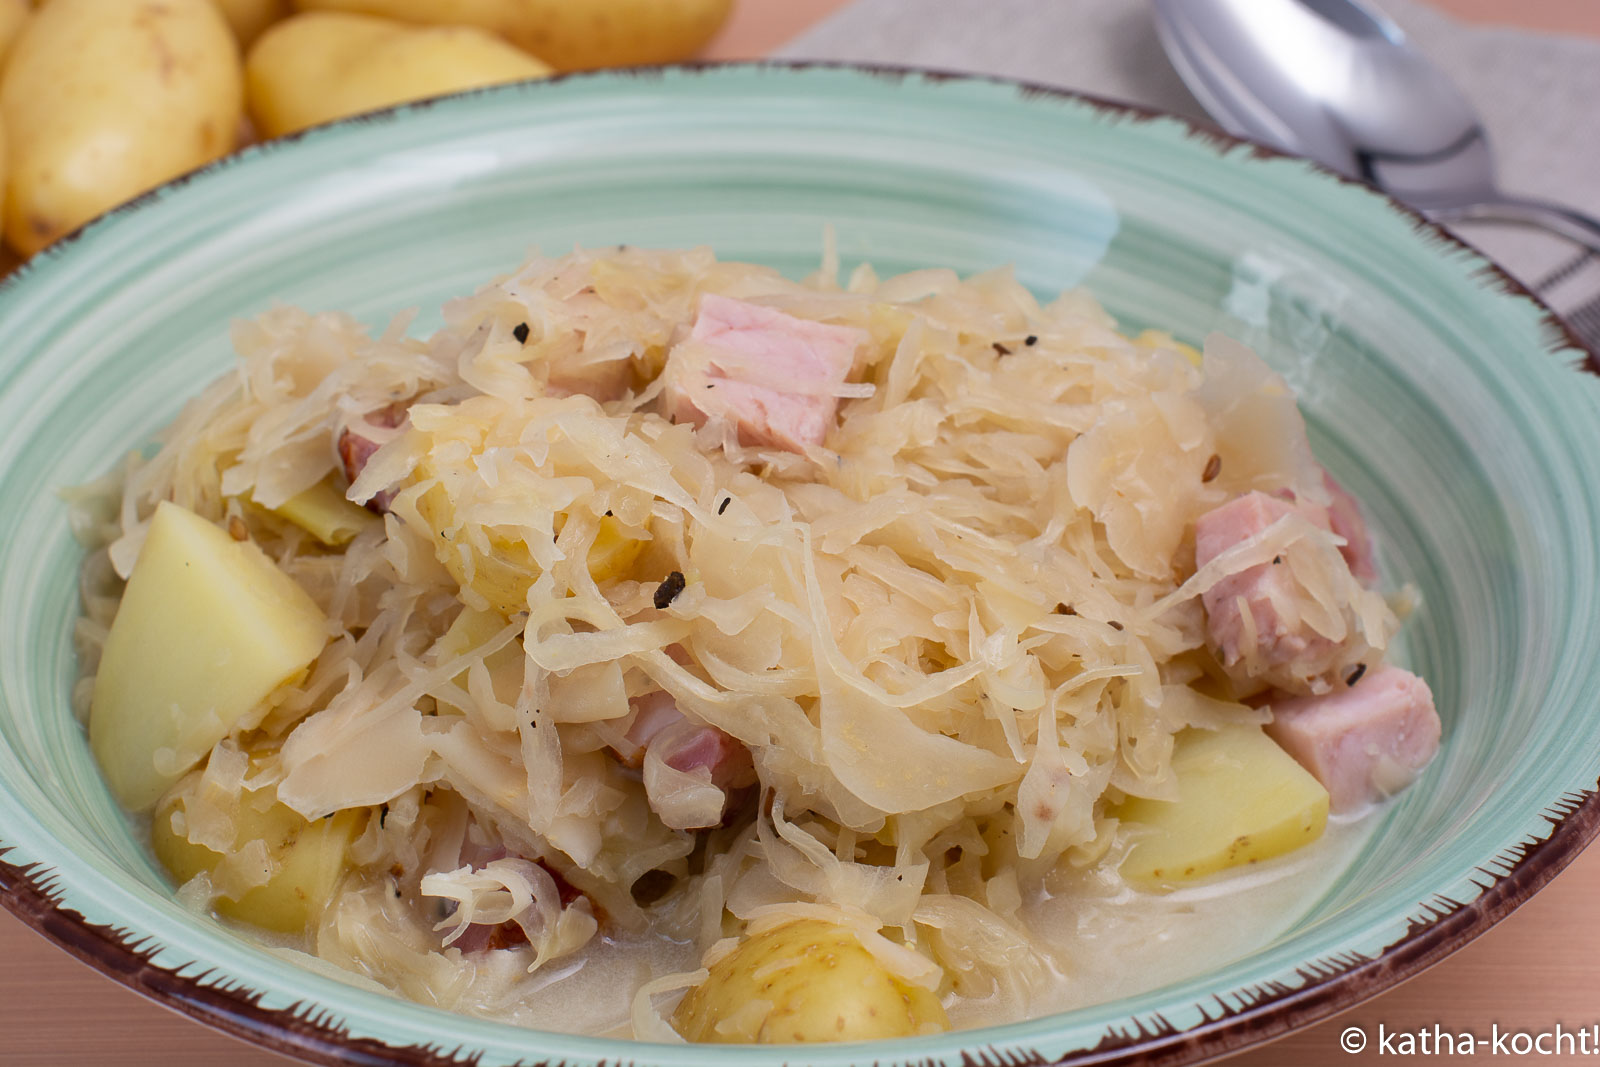 Kassler-Sauerkrautpfanne mit Kartoffeln - Katha-kocht!